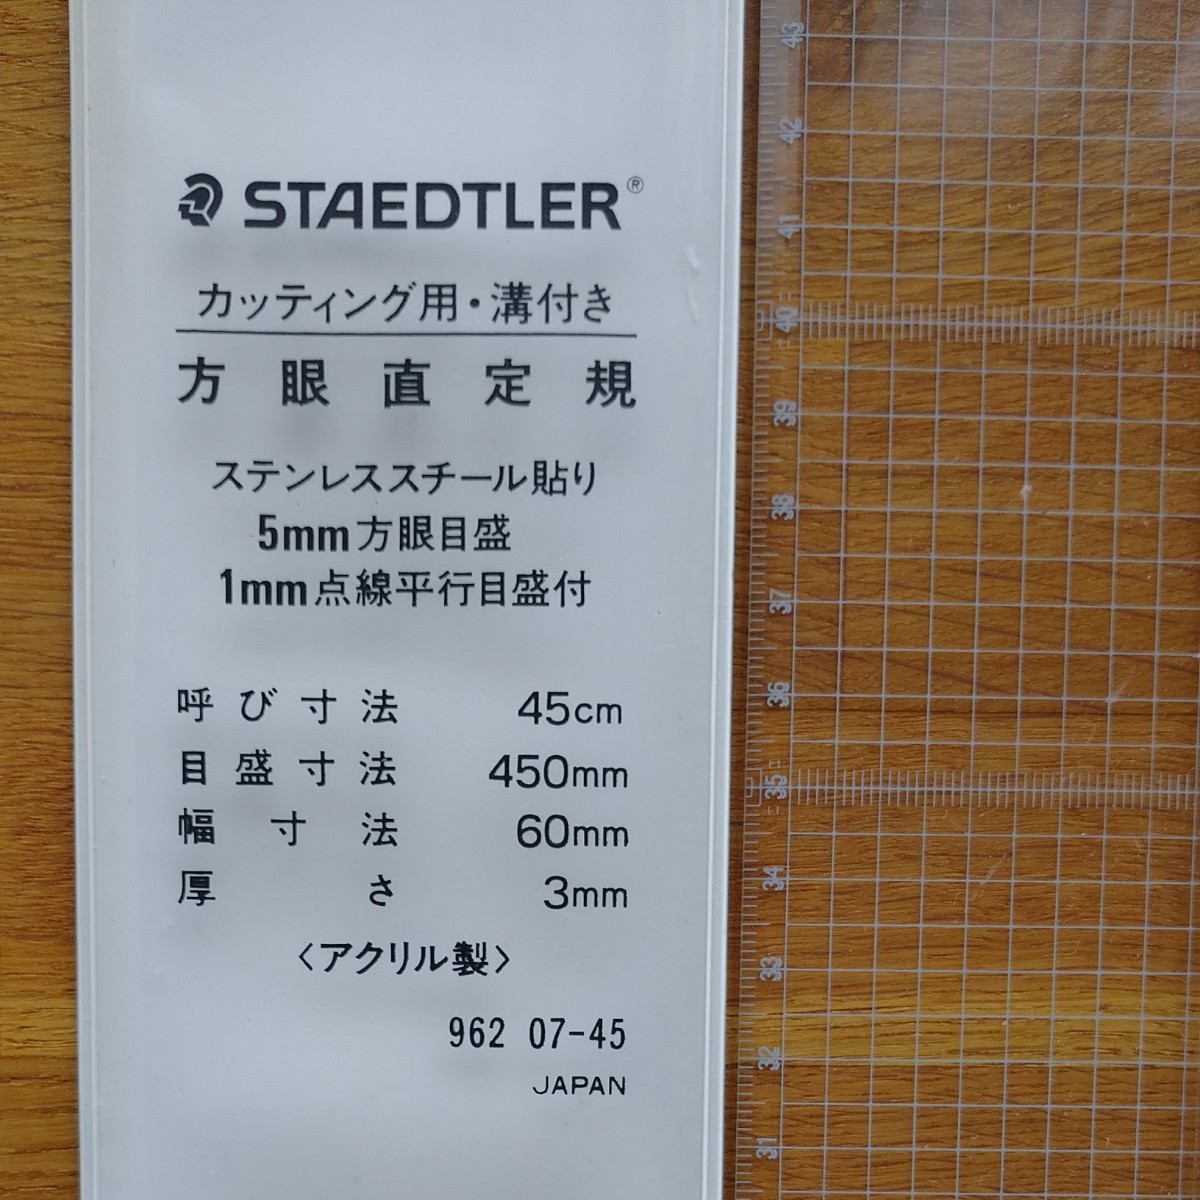 超熱 ステッドラー日本 直定規(962 06-50)「単位:ホン」 直線、方眼定規